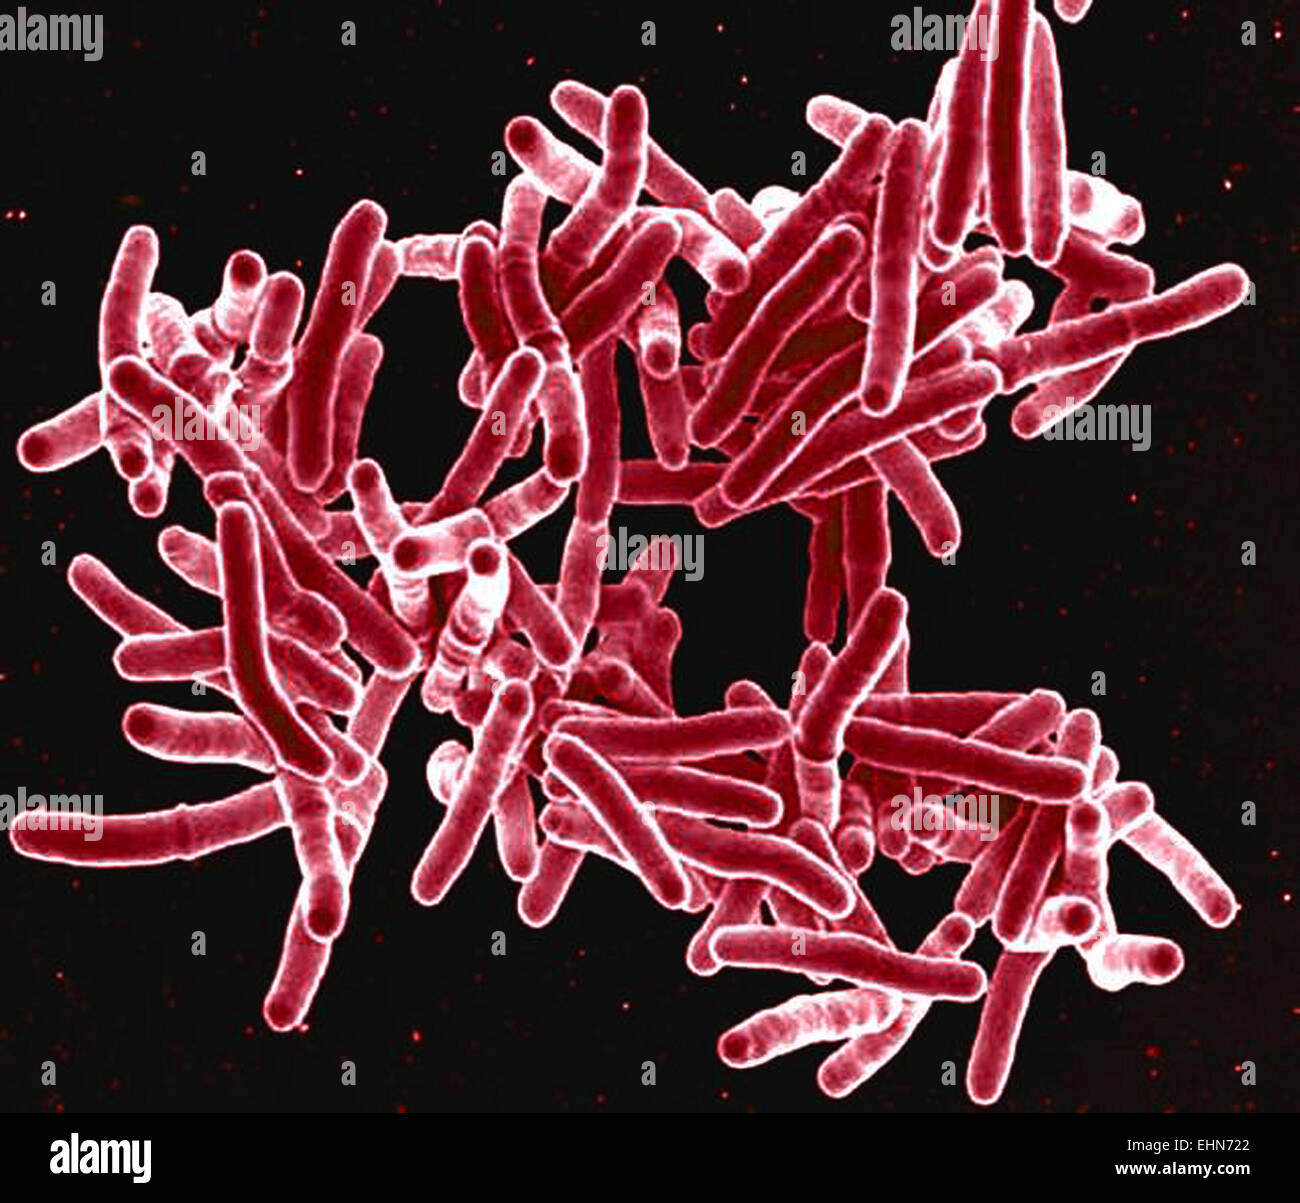 La bactérie Mycobacterium tuberculosis, Ces bactéries Gram-positives, en forme de tige, les bactéries causent la maladie Tuberculose, colorisées, l'analyse des électrons Microphotographie (SEM). Banque D'Images